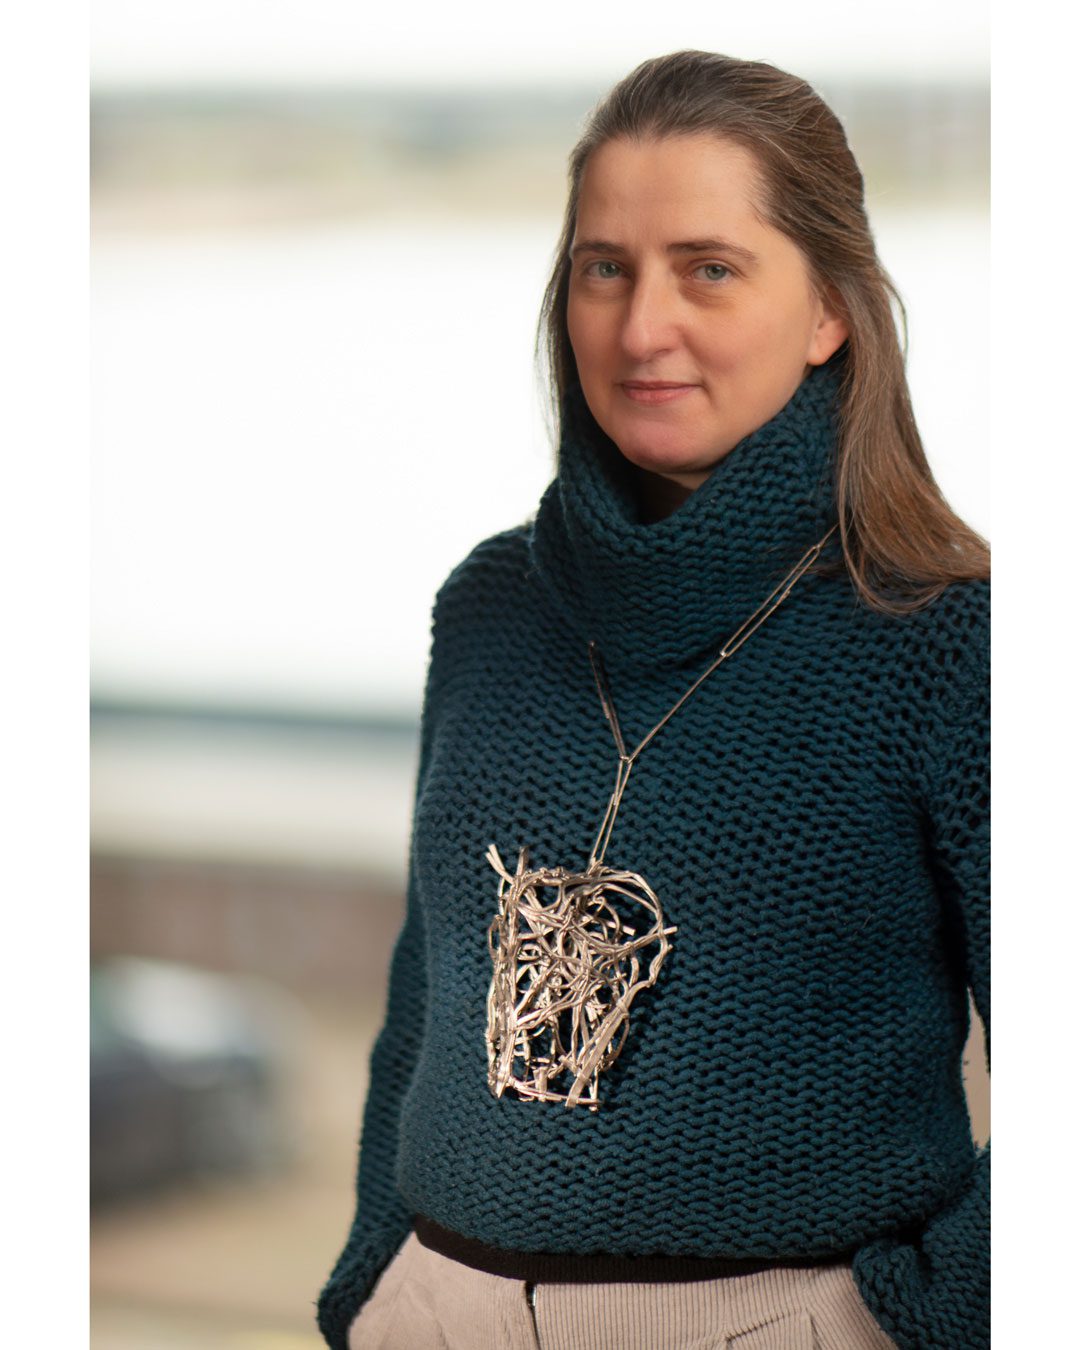 Vivi Touloumidi wearing a pendant by Iris Bodemer - 23-1-2022